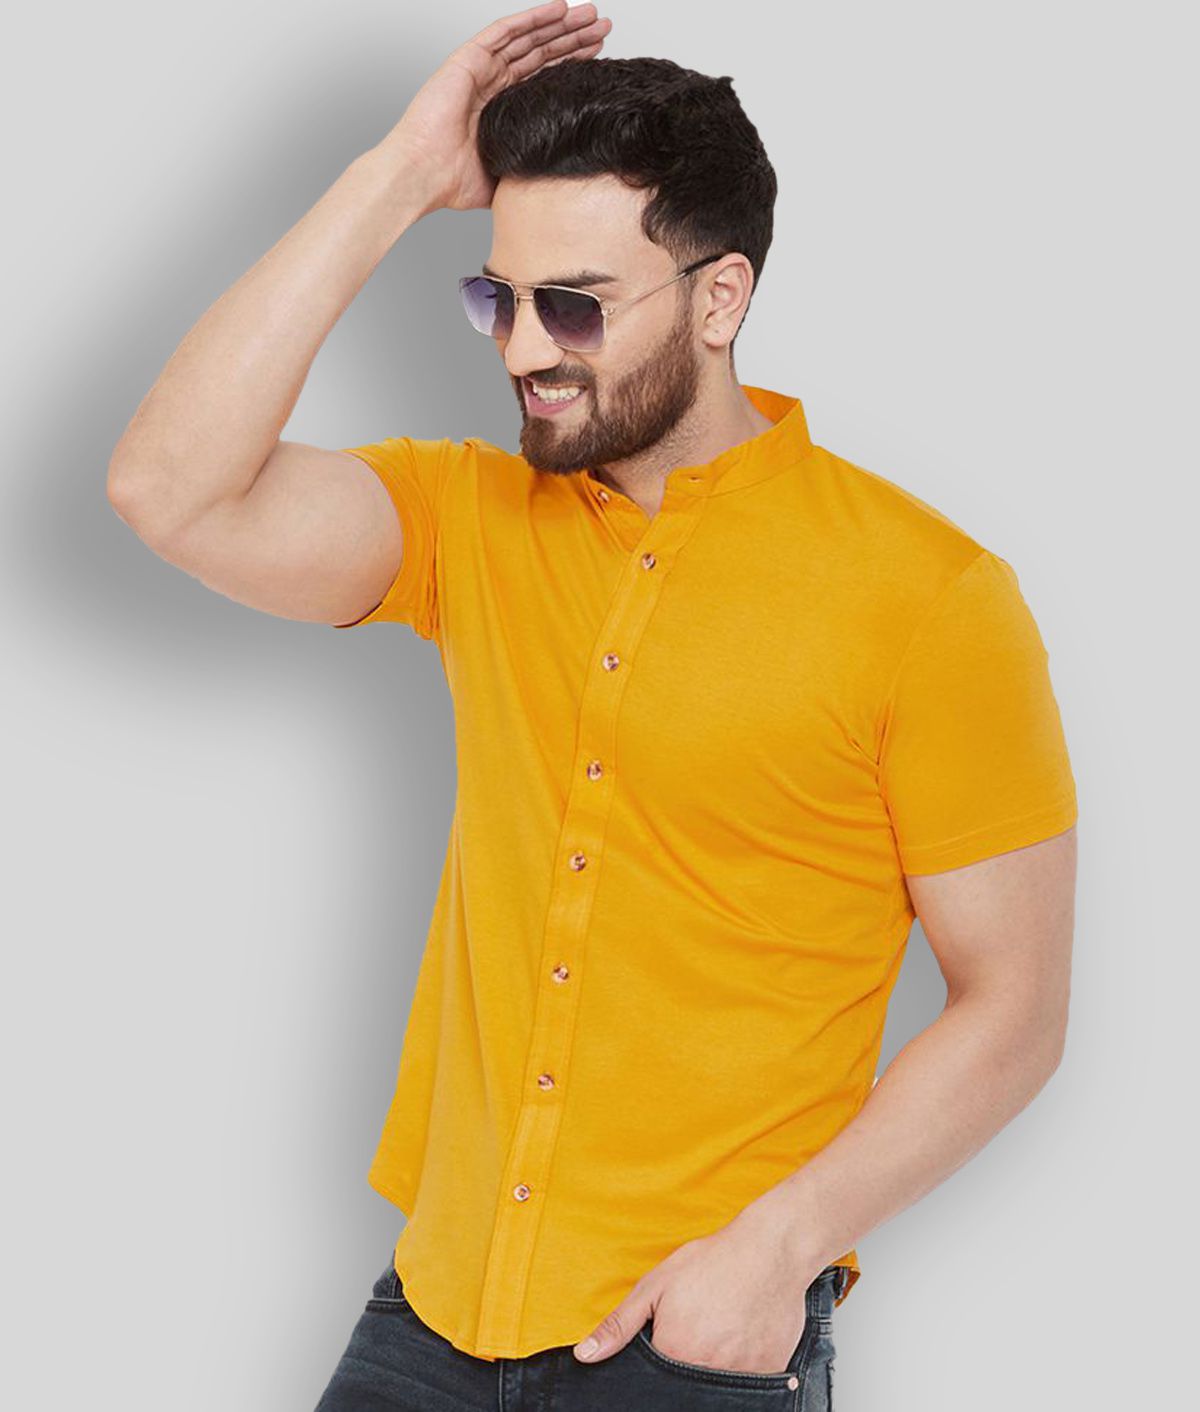     			GESPO - Mustard Cotton Blend Regular Fit Men's Casual Shirt (Pack of 1)